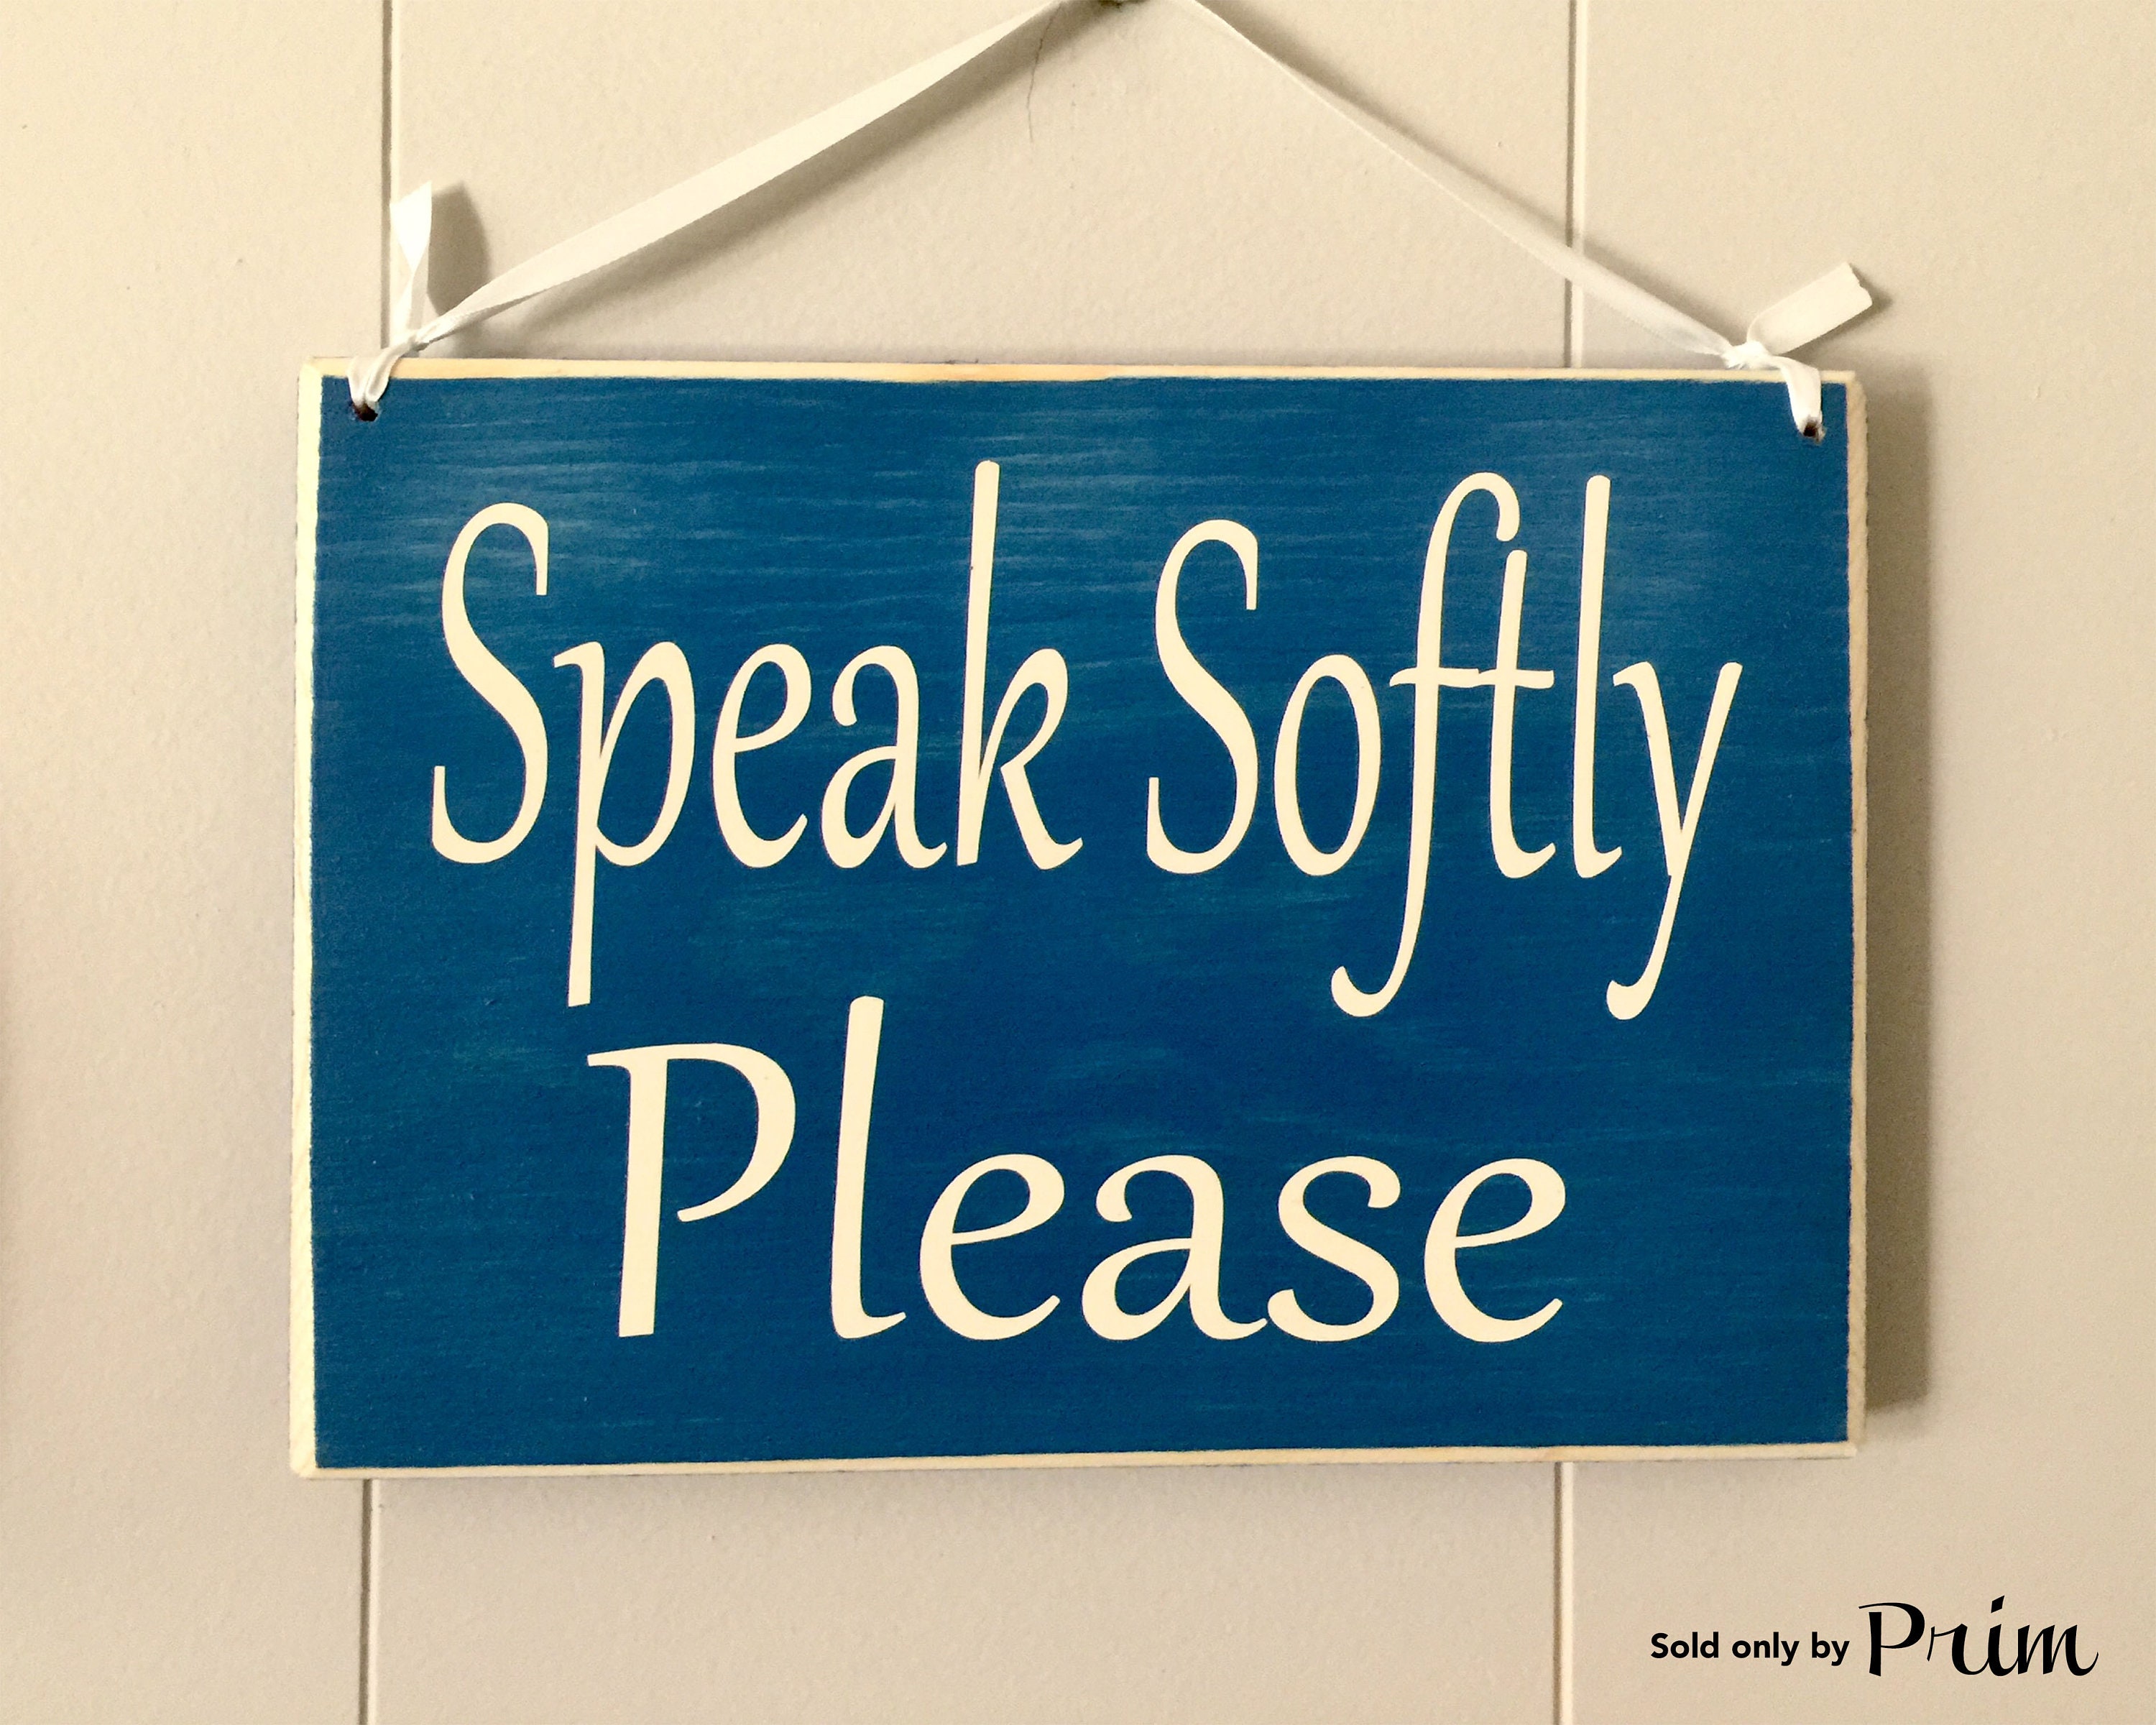 Quiet please. Speak quietly.